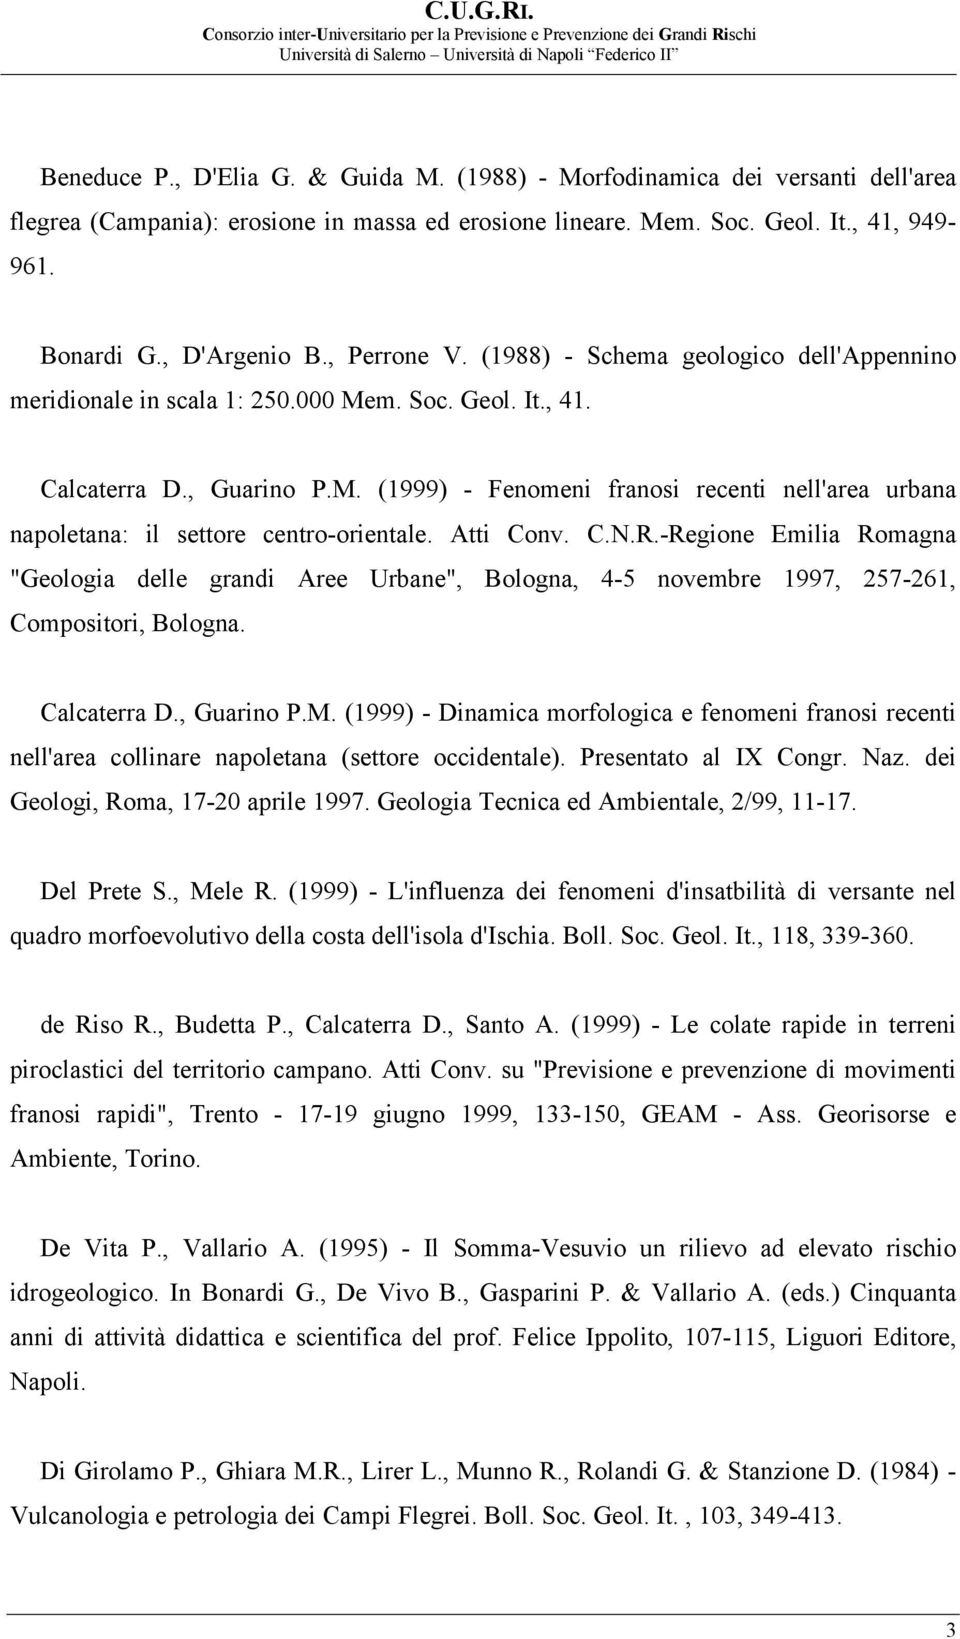 Atti Conv. C.N.R.-Regione Emilia Romagna "Geologia delle grandi Aree Urbane", Bologna, 4-5 novembre 1997, 257-261, Compositori, Bologna. Calcaterra D., Guarino P.M.